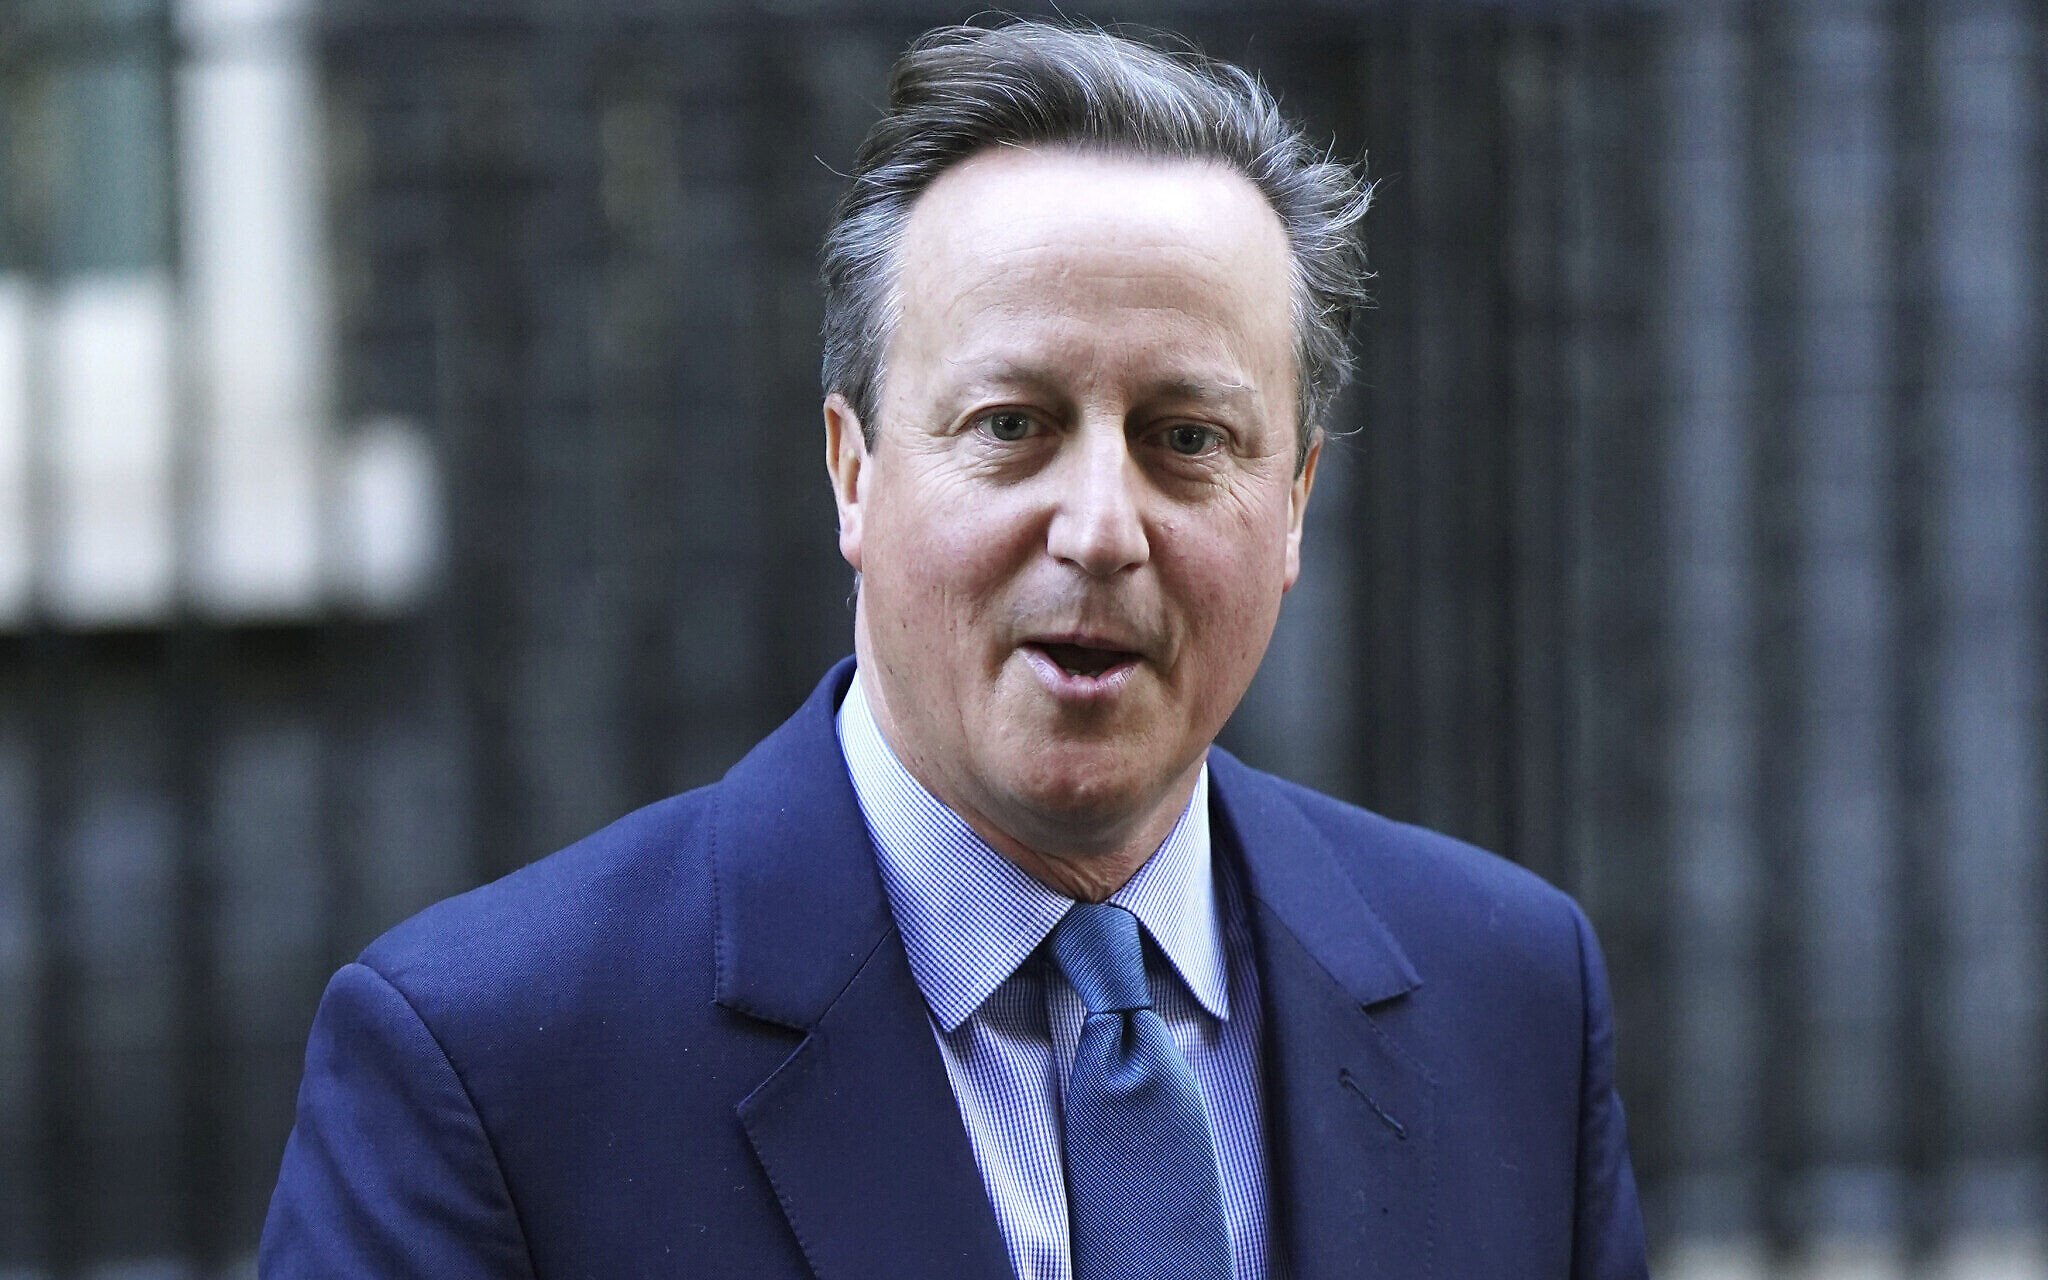  Noul ministru de externe David Cameron, fost premier al UK, devine Lord Cameron de Chipping Norton